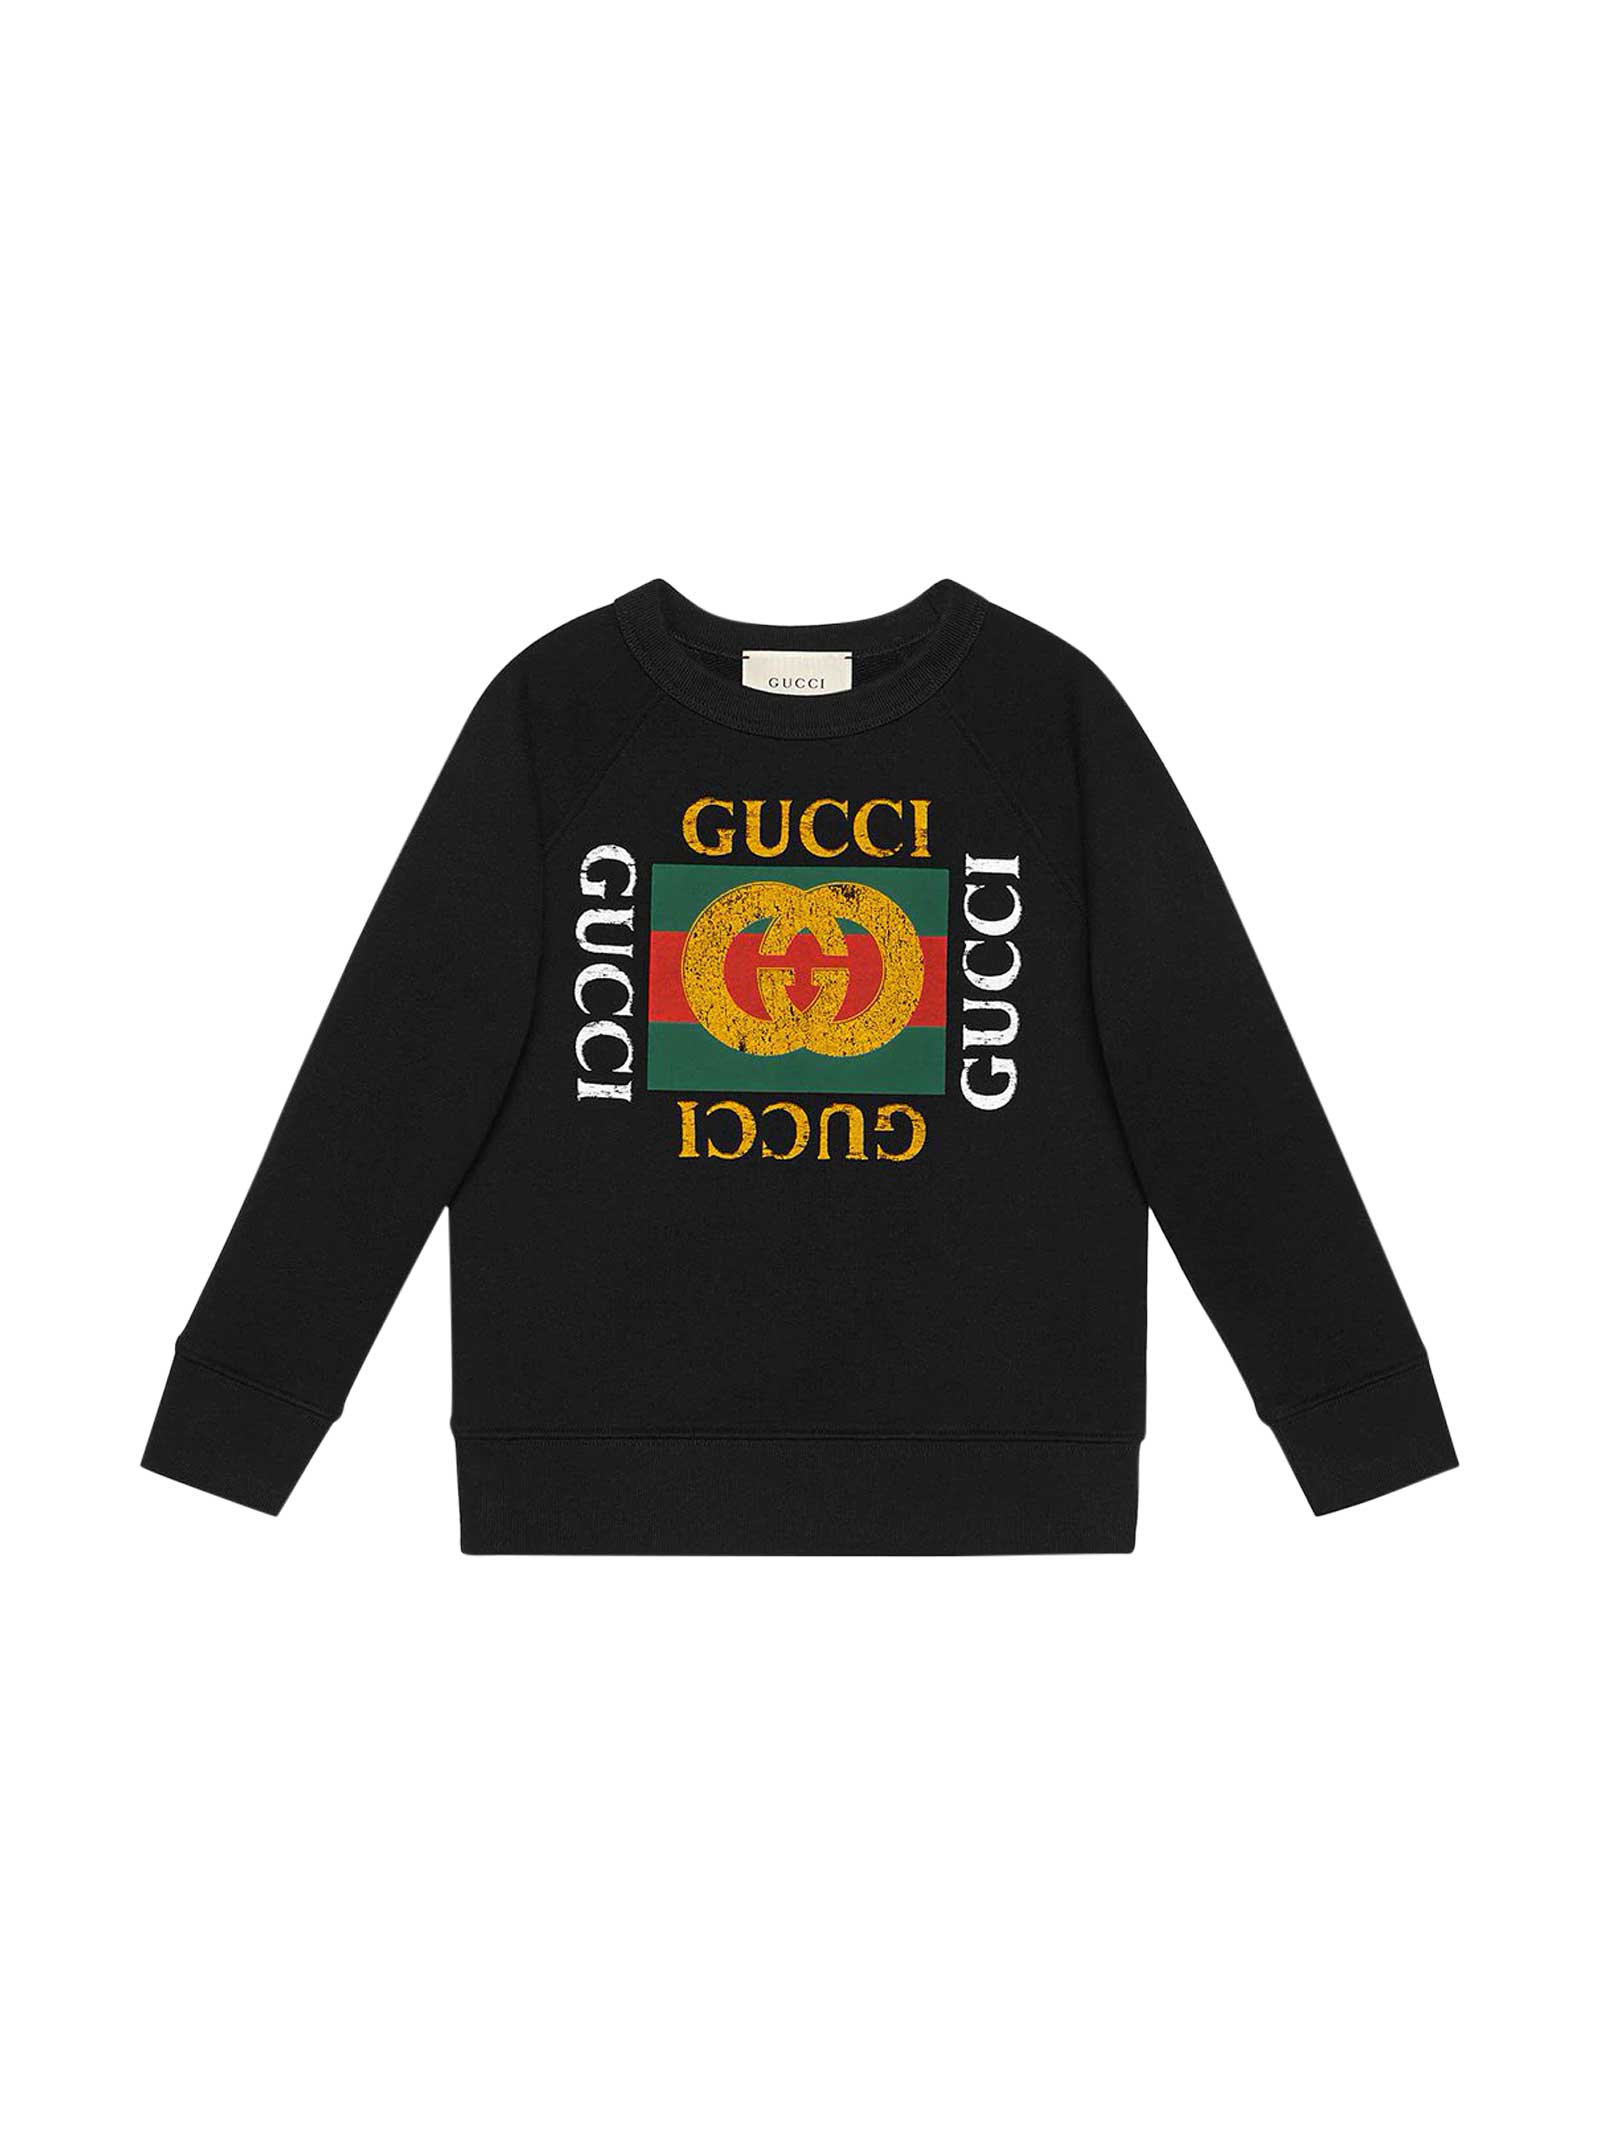 Gucci Black Sweatshirt With Multicolor Print